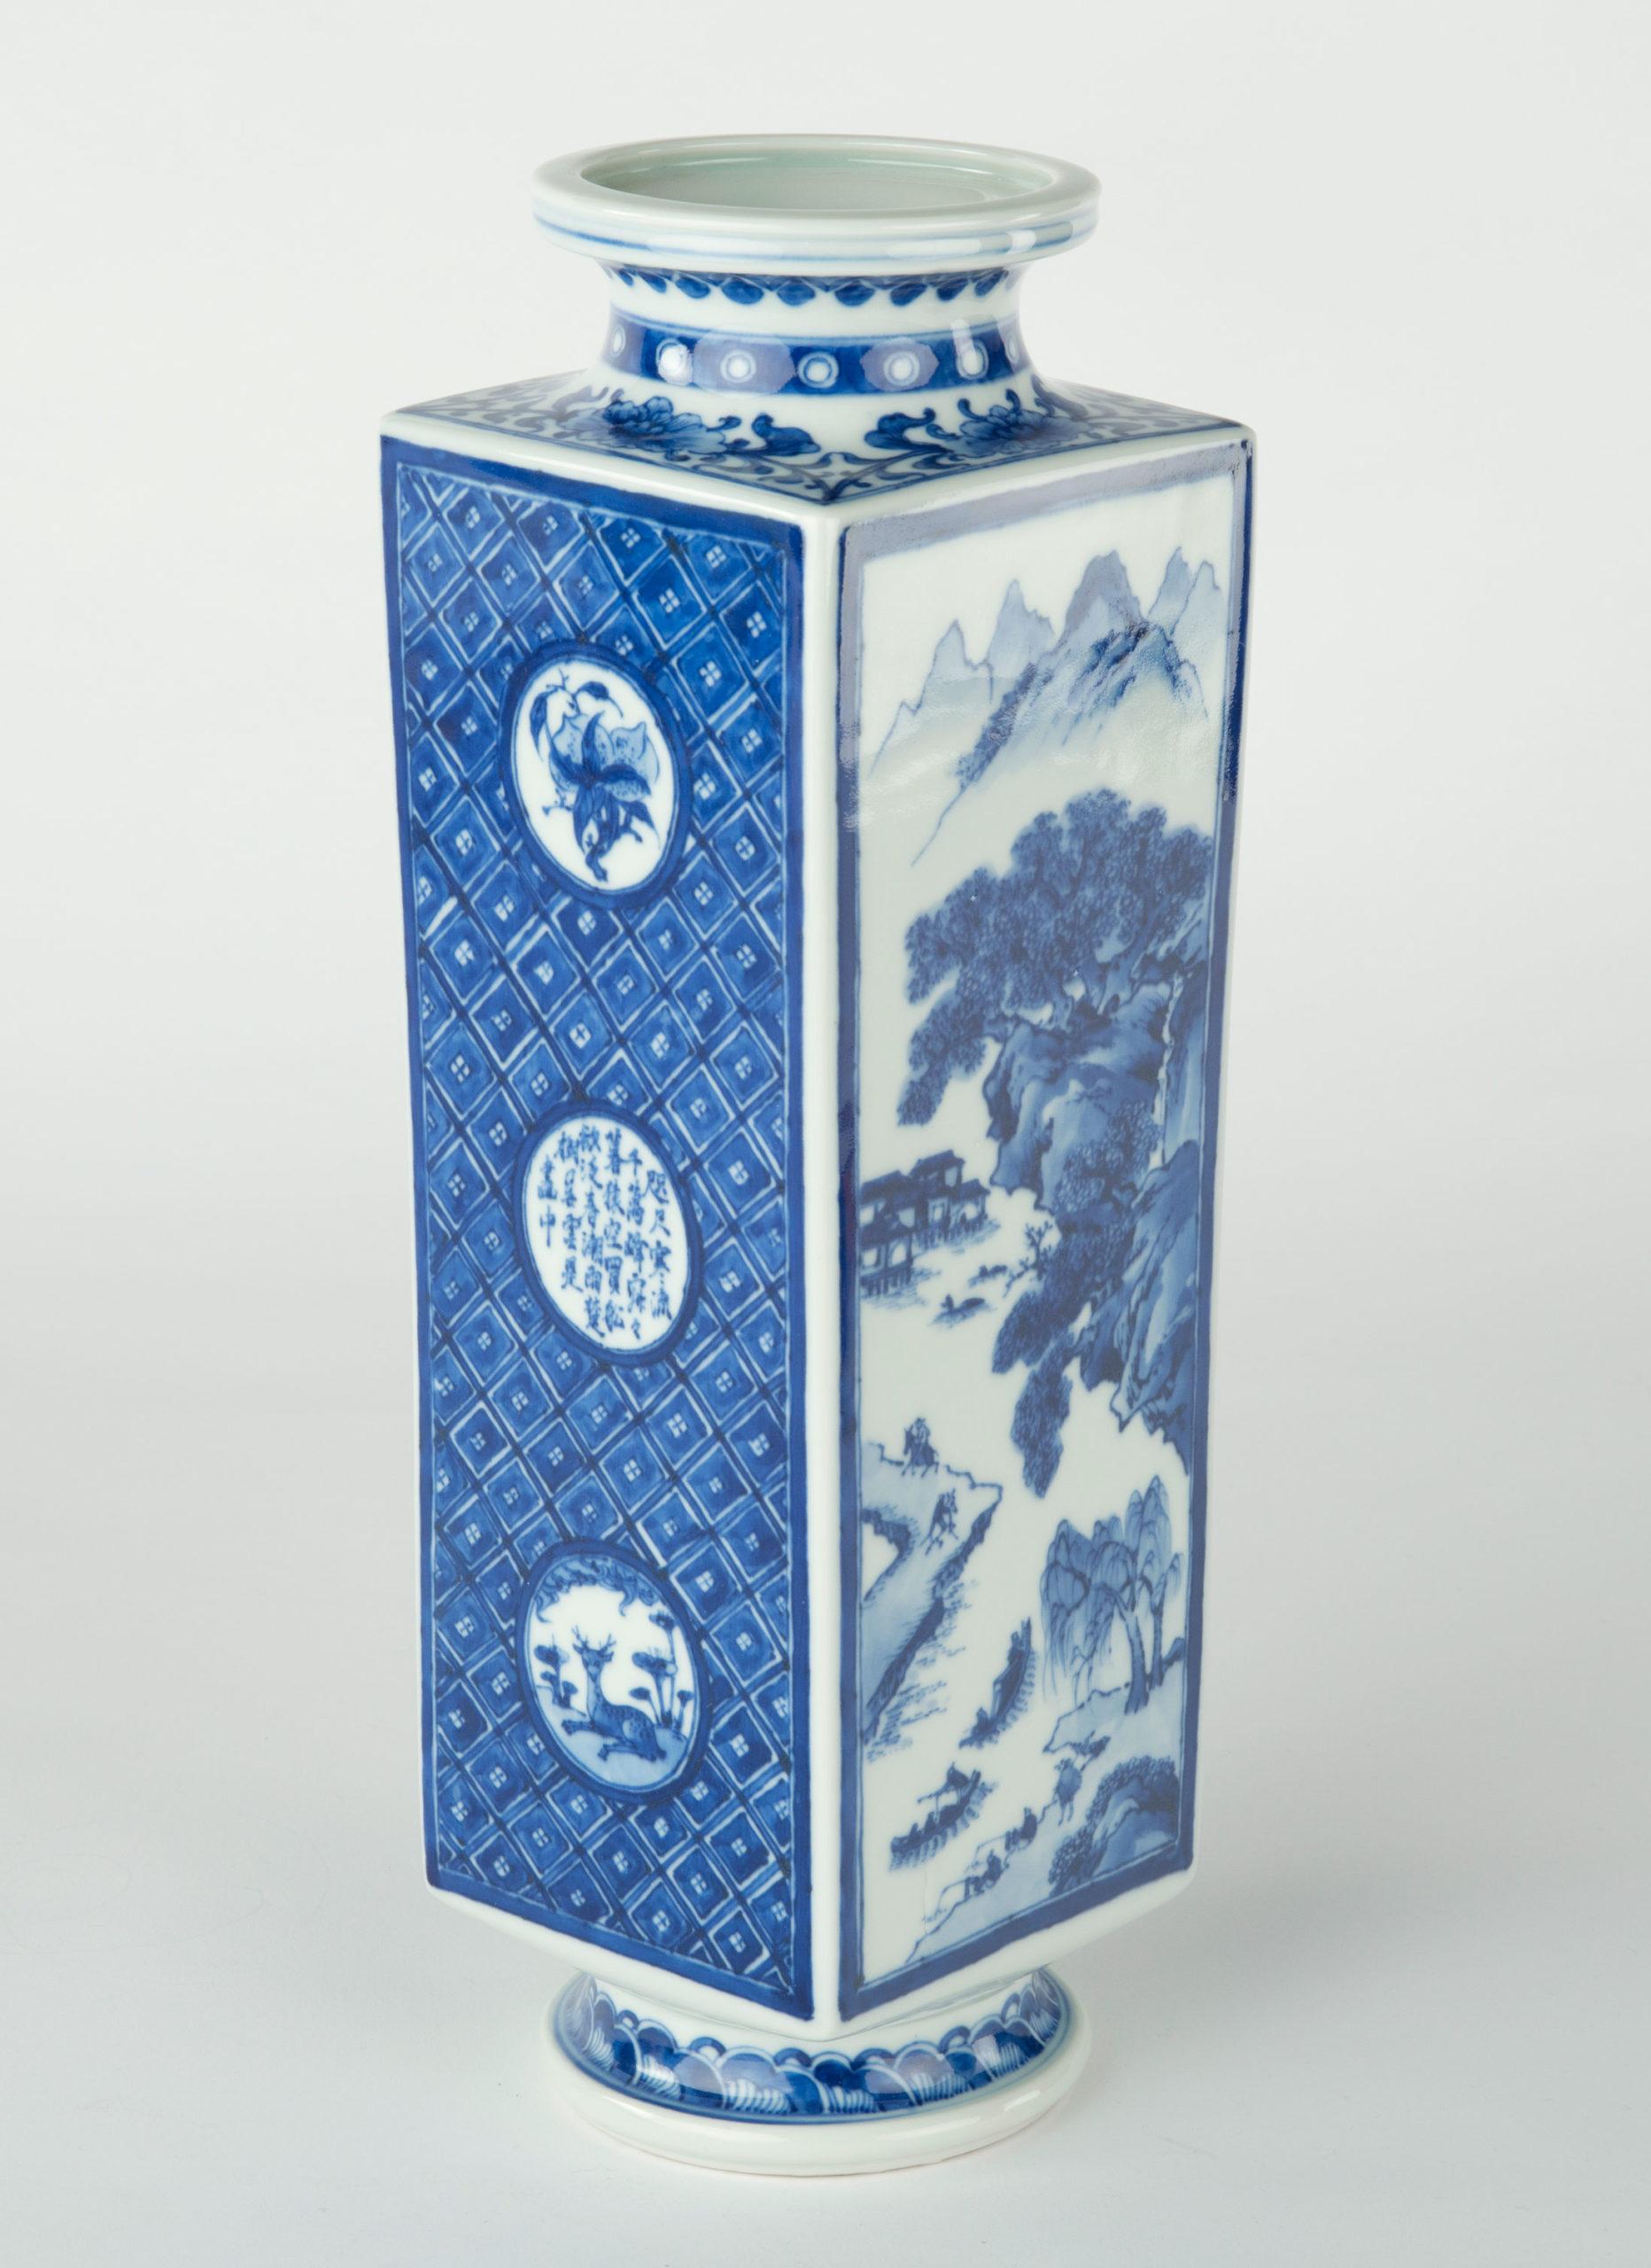 Dans le cadre de notre collection d'œuvres d'art japonaises, nous sommes ravis d'offrir ce vase en céramique de forme carrée effilée de la période Meiji 1868-1912, provenant des studios du très convoité artiste impérial Miyagawa Makuzu Kozan